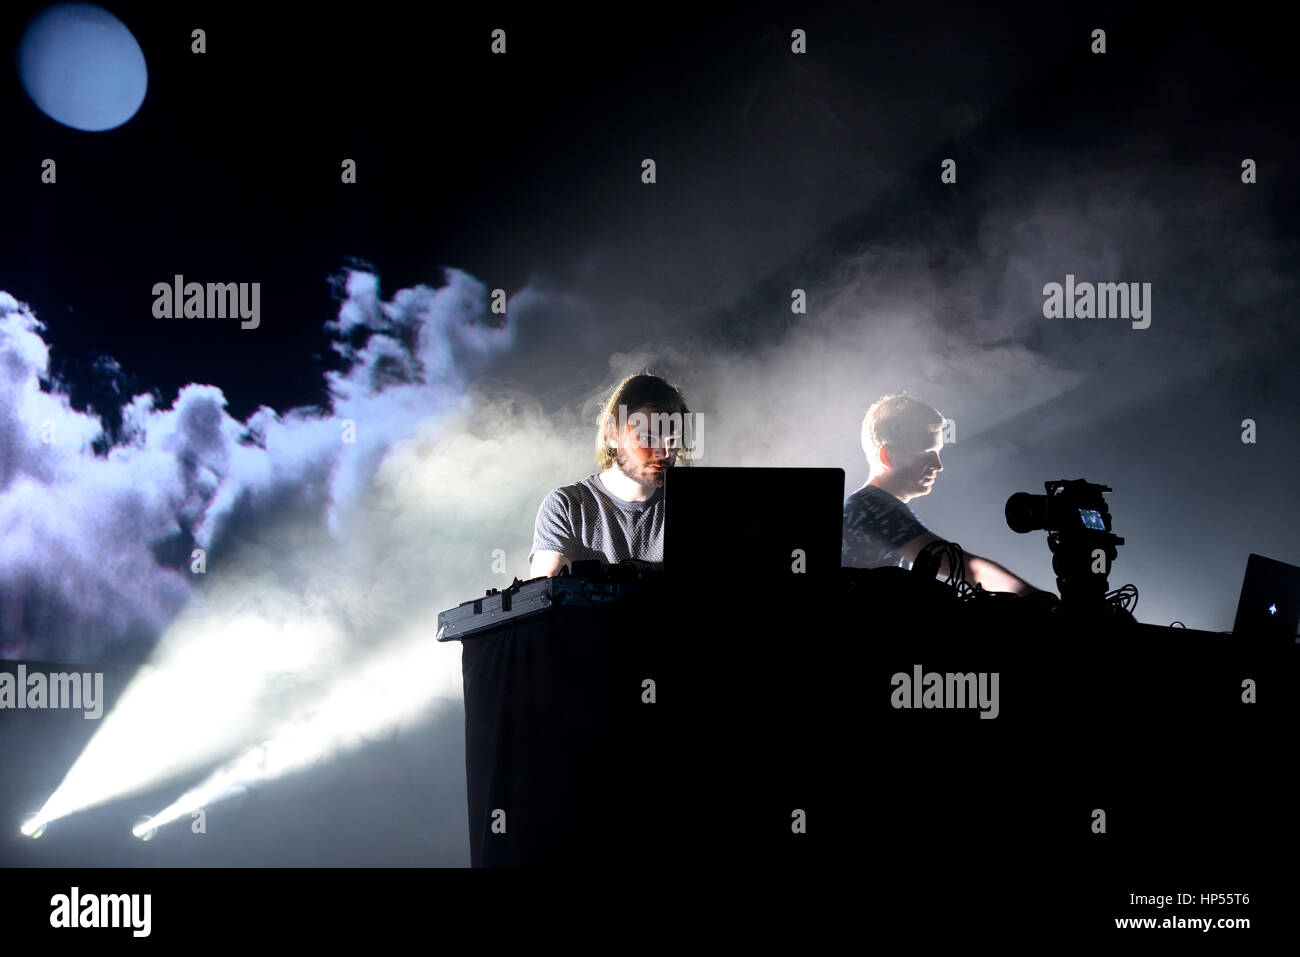 Barcelone - 19 juin : Kiasmos (minimal techno expérimentale et duo) en concert au festival Sonar le 19 juin 2015 à Barcelone, Espagne. Banque D'Images